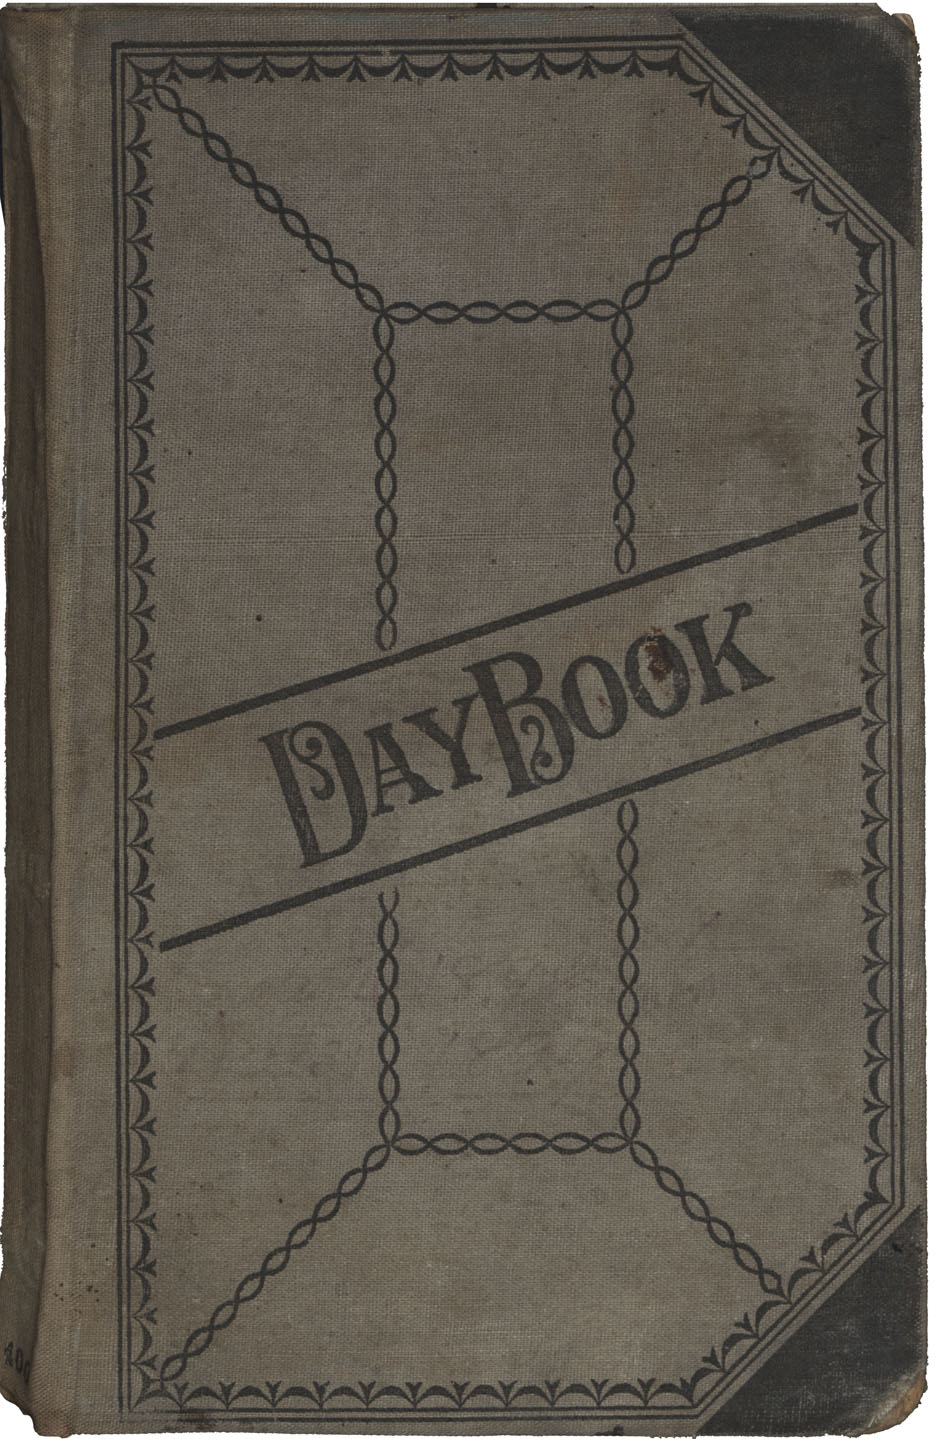 Daybook number 15 